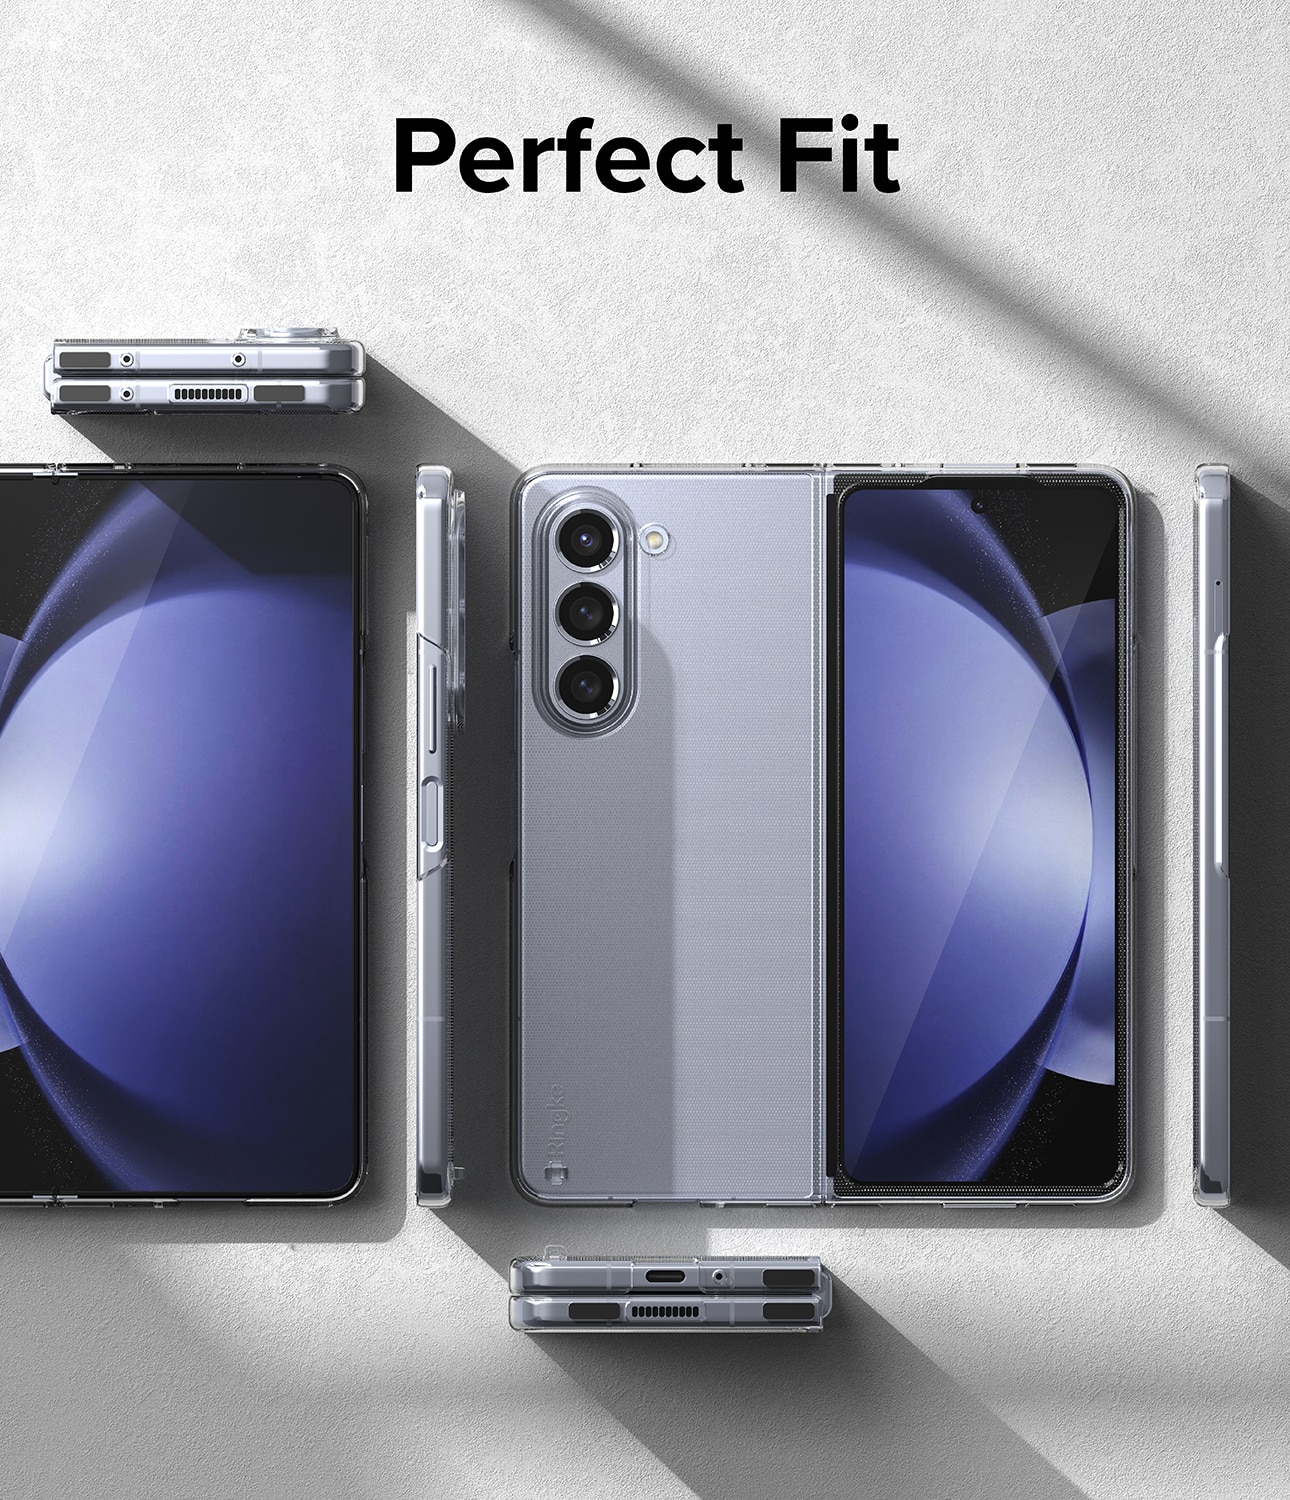 Funda Slim Samsung Galaxy Z Fold 5 Clear